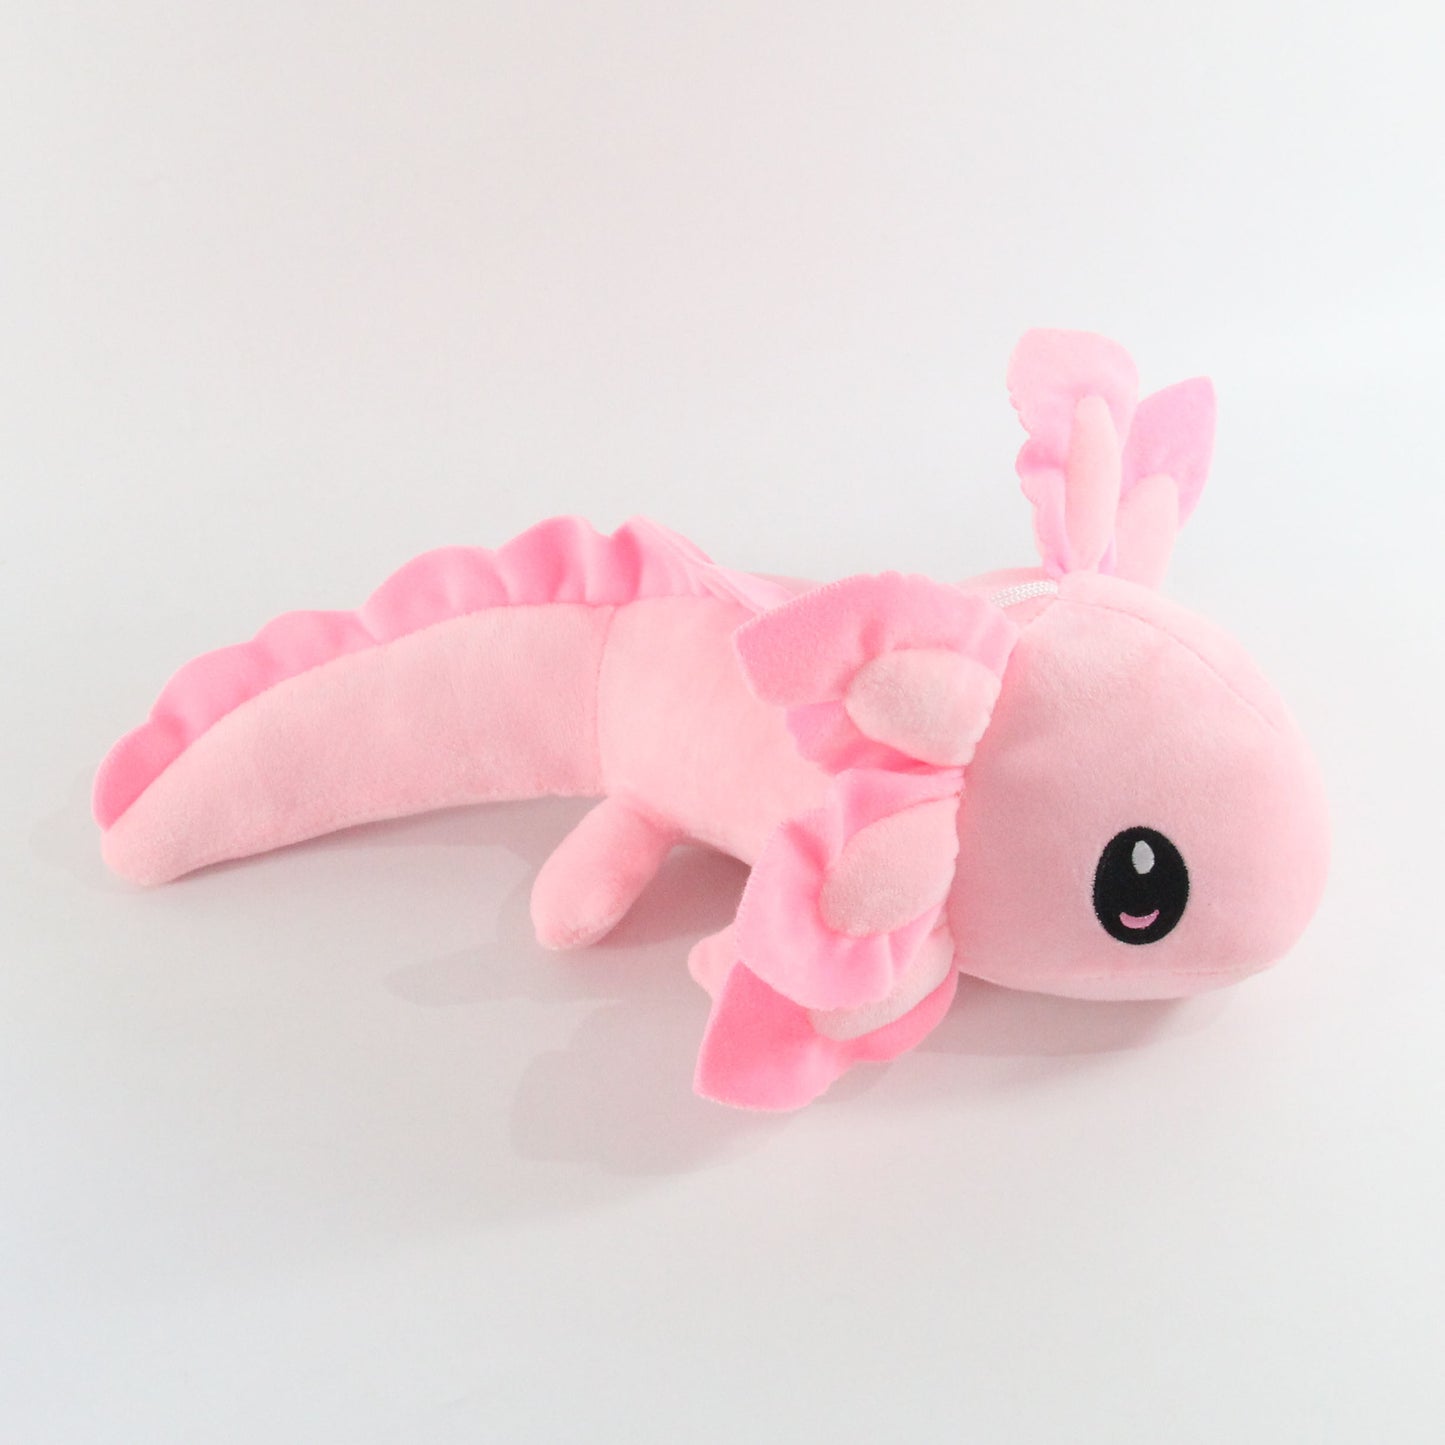 Kawaii Axolotl Salamander Plush Doll Gift Creative New Cute Cartoon